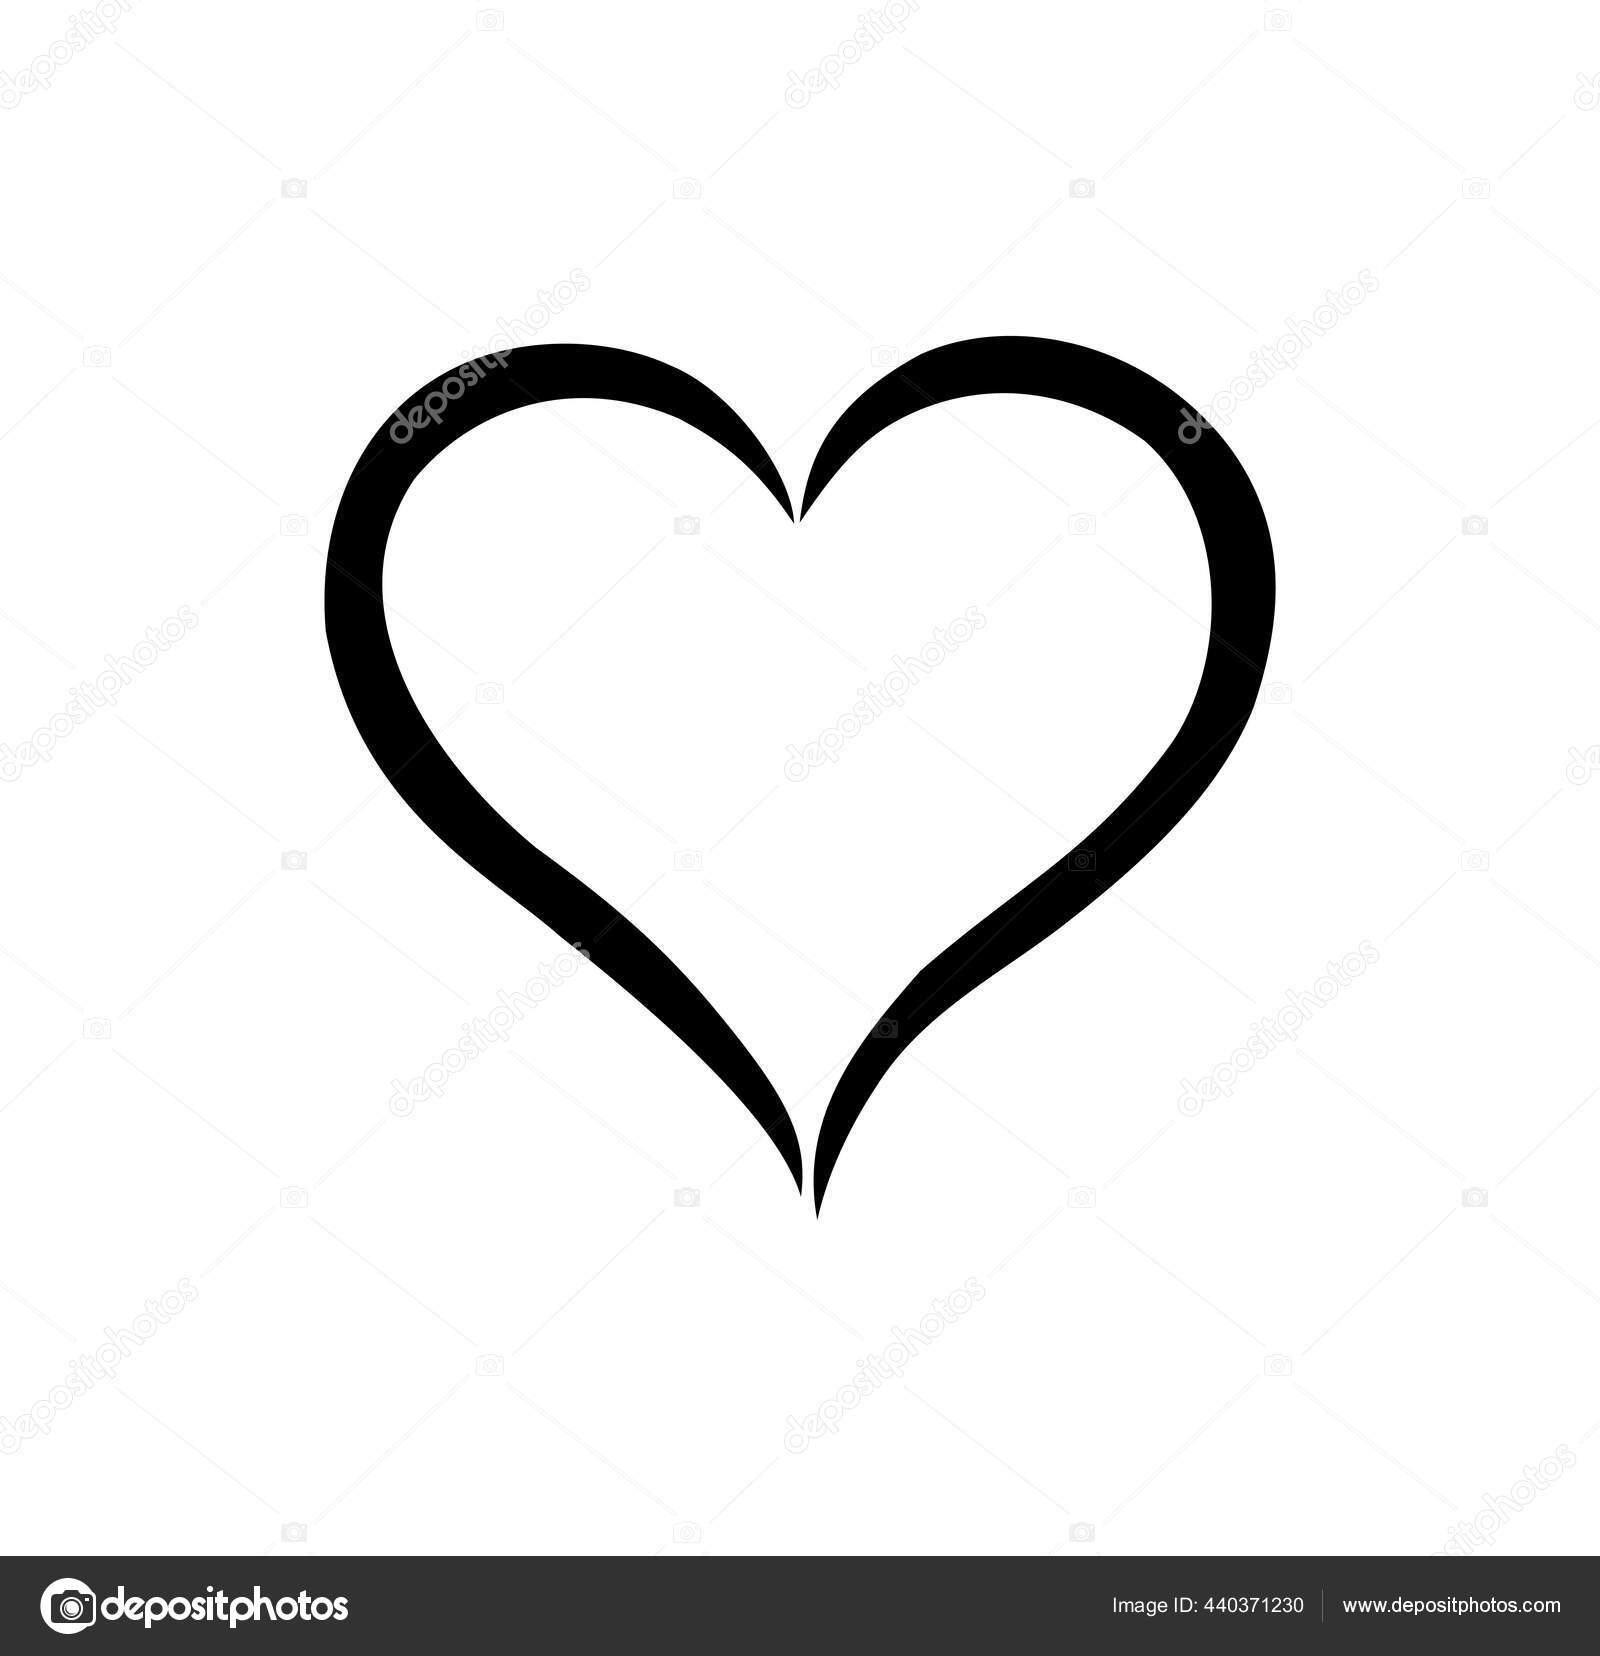 https://st2.depositphotos.com/18644982/44037/v/1600/depositphotos_440371230-stock-illustration-black-heart-shape-outline-stencil.jpg